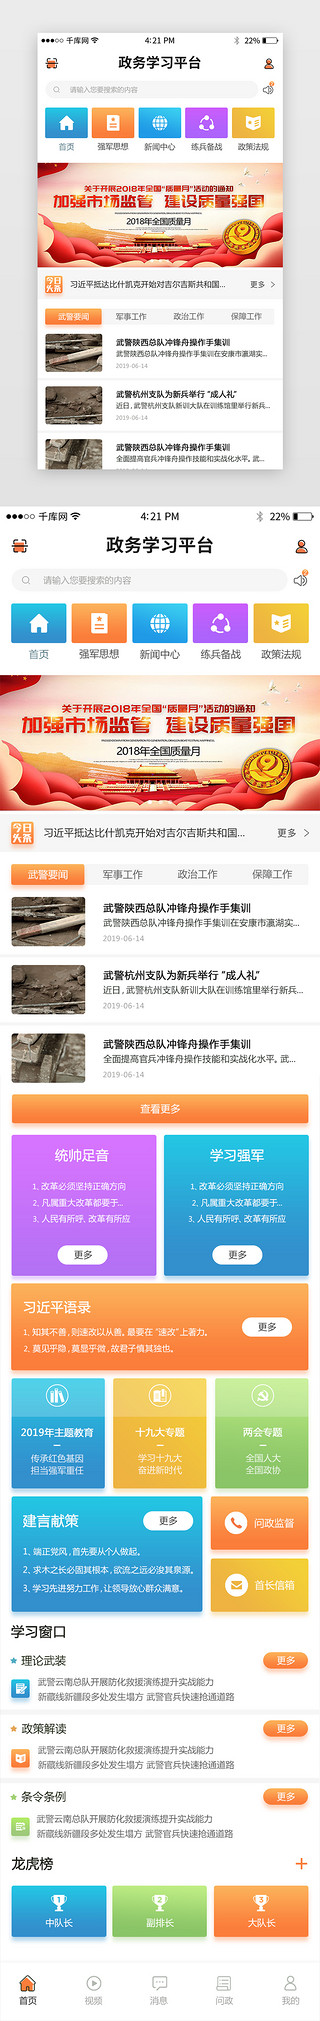 新闻演播室UI设计素材_政务类新闻页面模版